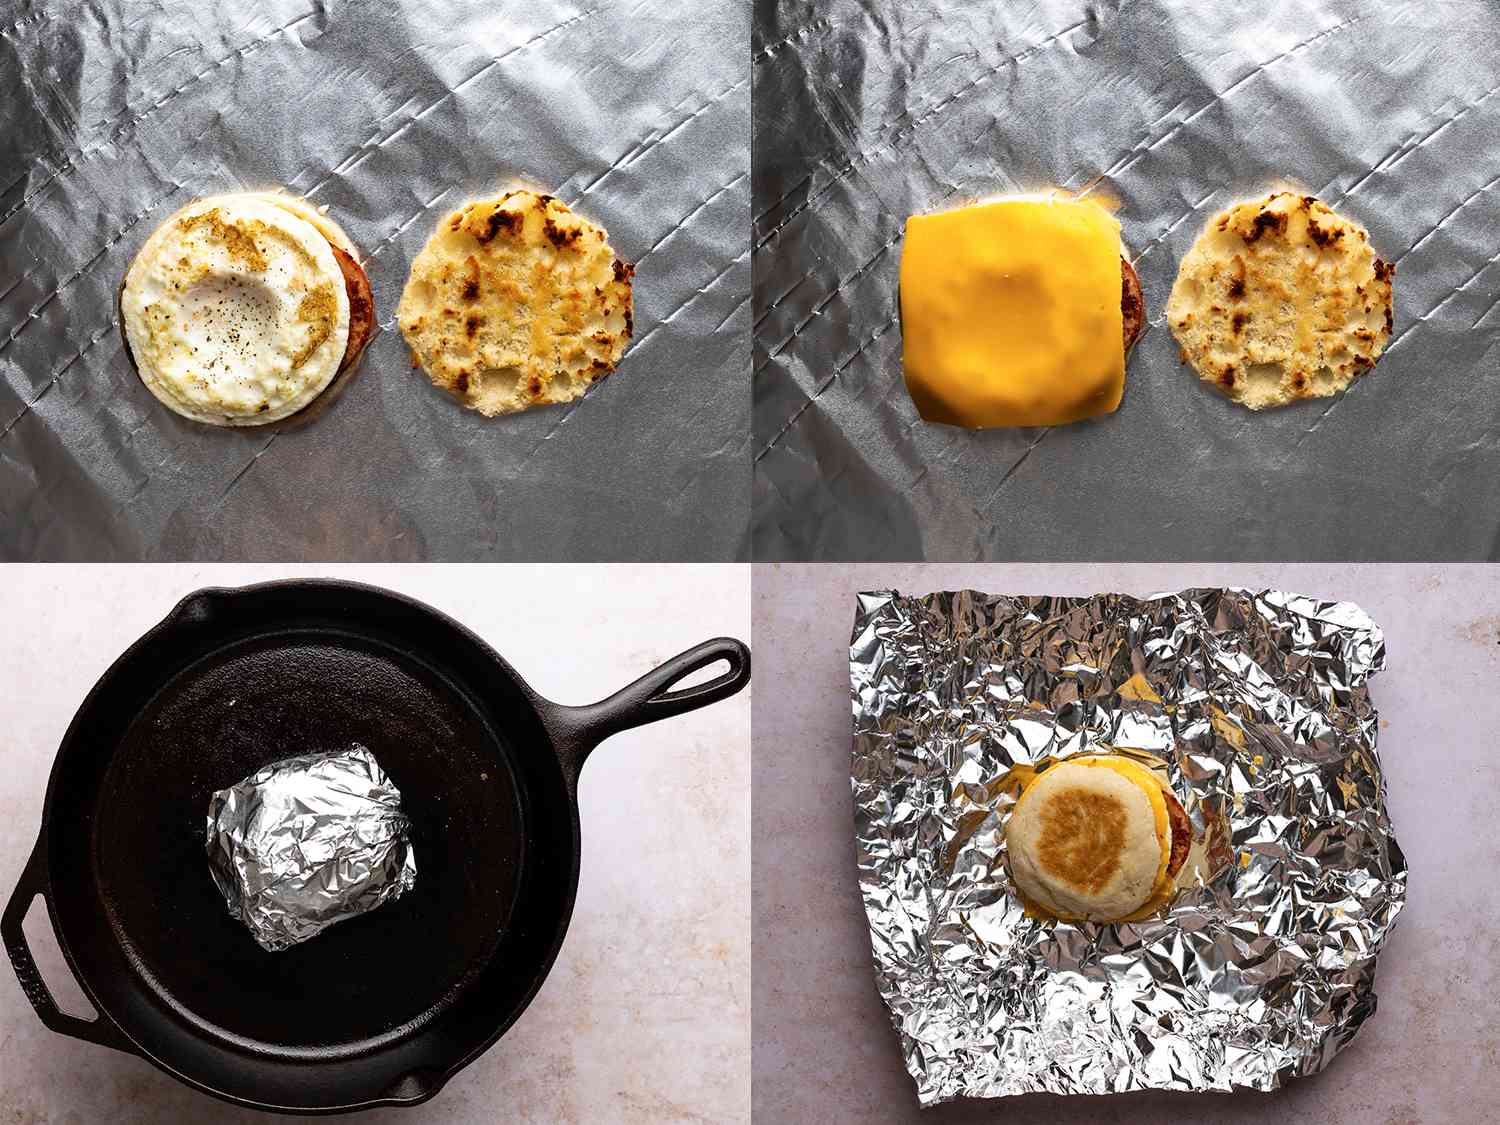 一张四张图片的拼贴画展示了蛋松饼的最终结构。左上角的图片显示了鸡蛋松饼的左侧，上面是煮熟的鸡蛋。右上方的图片显示，鸡蛋上盖了一片美国奶酪。左下角的图片展示了用铝箔纸包裹的完整三明治，放在铸铁煎锅上加热。右下方的图片显示的是打开包装的蛋松饼，放在铝箔纸上。